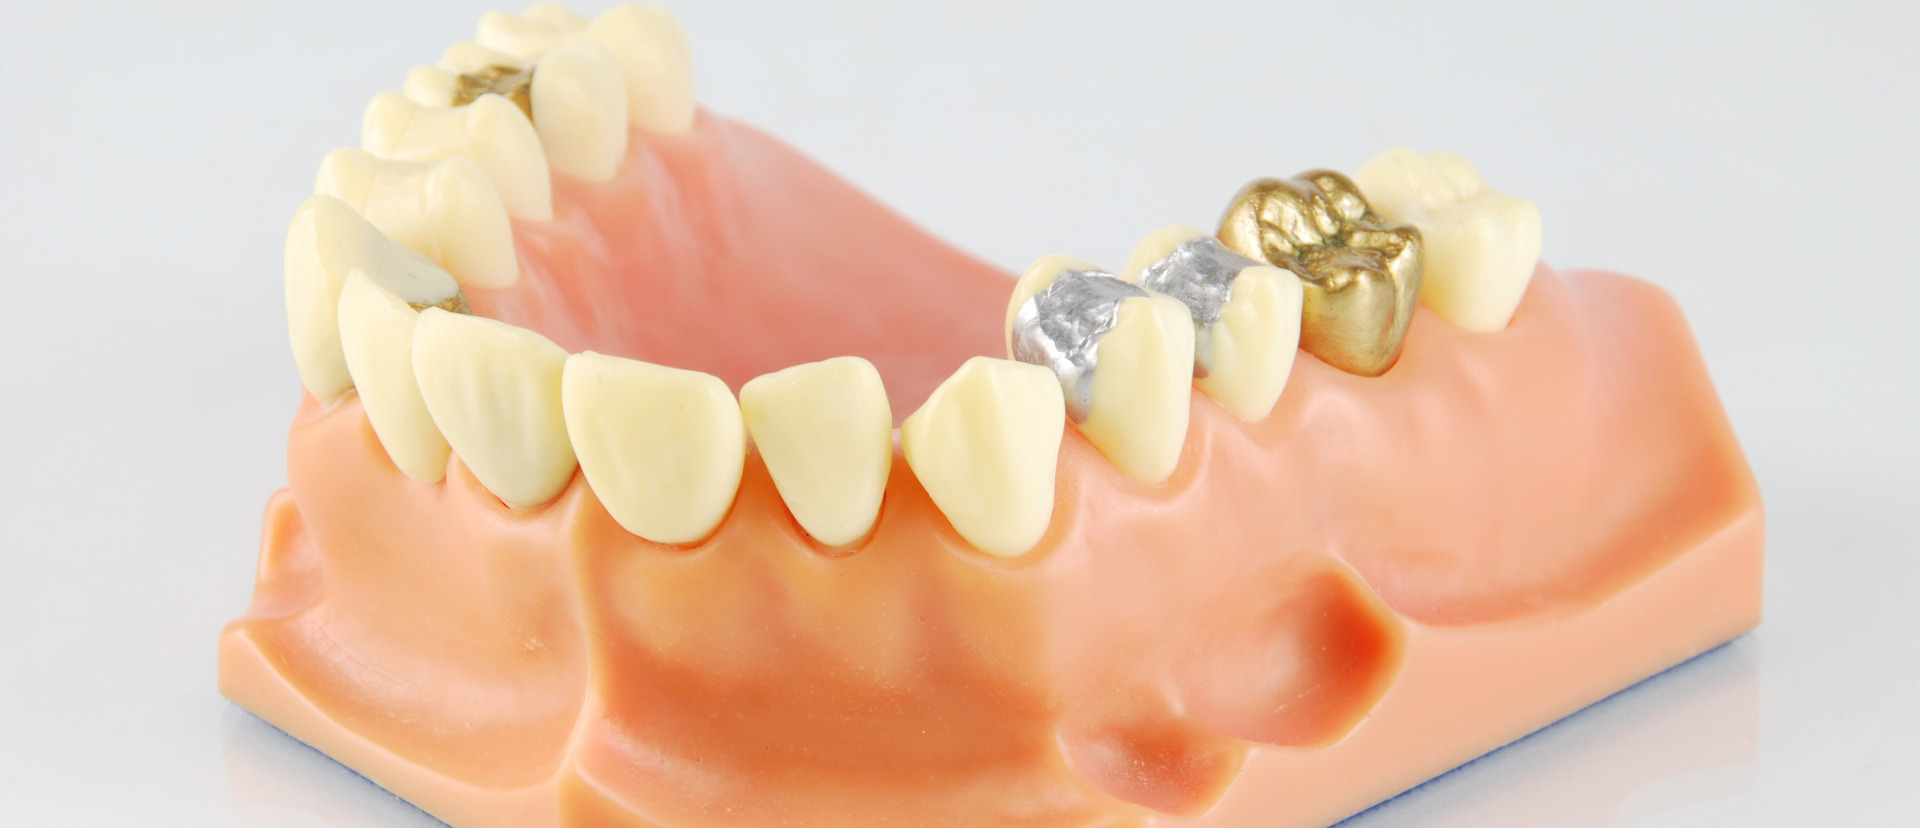 Dental crown and bridge work